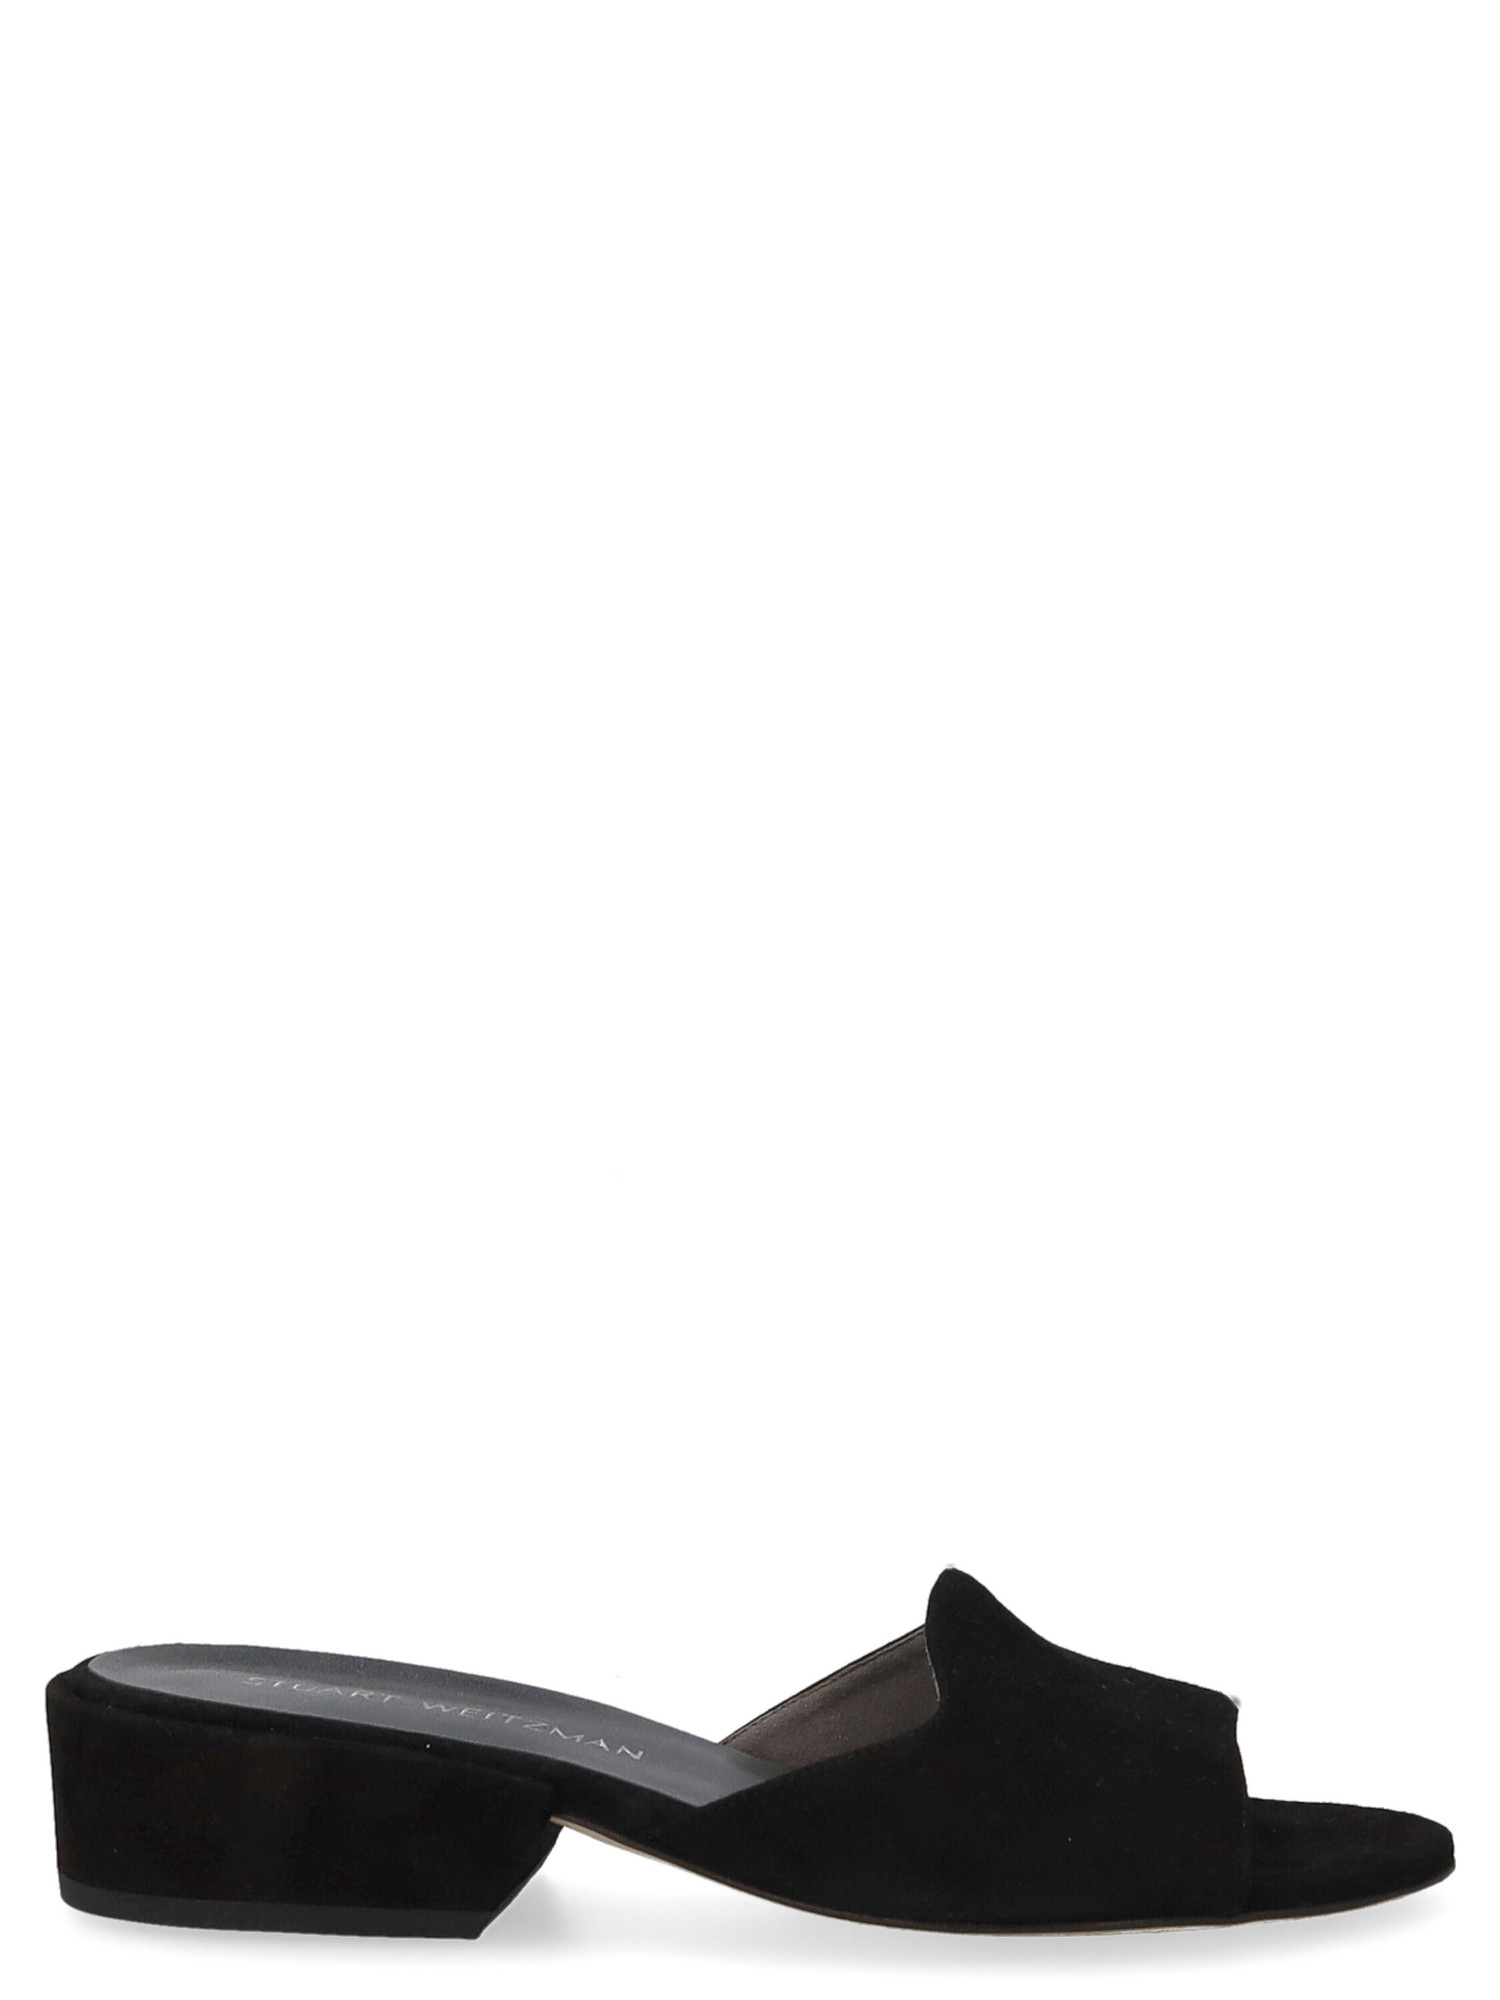 Slippers Pour Femme - Stuart Weitzman - En Leather Black - Taille: US 7.5 - EU 38.5